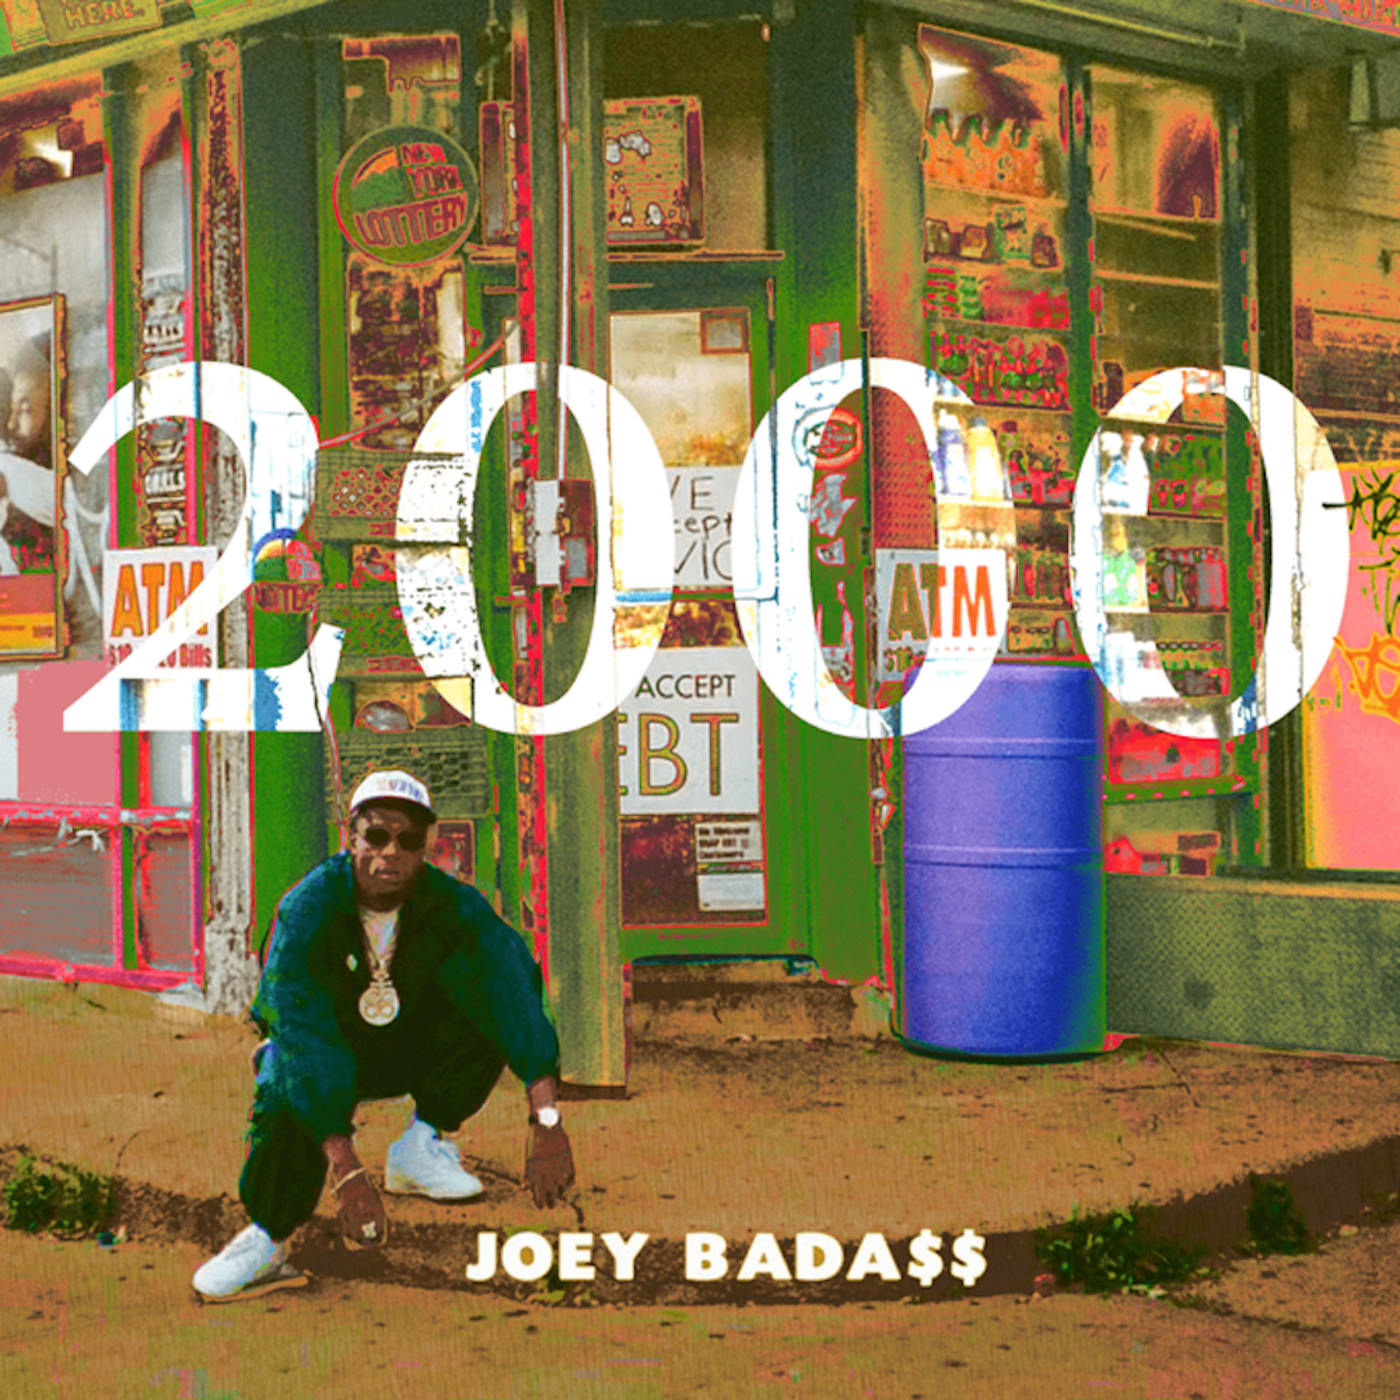 Joey Badass Release '2000' Album